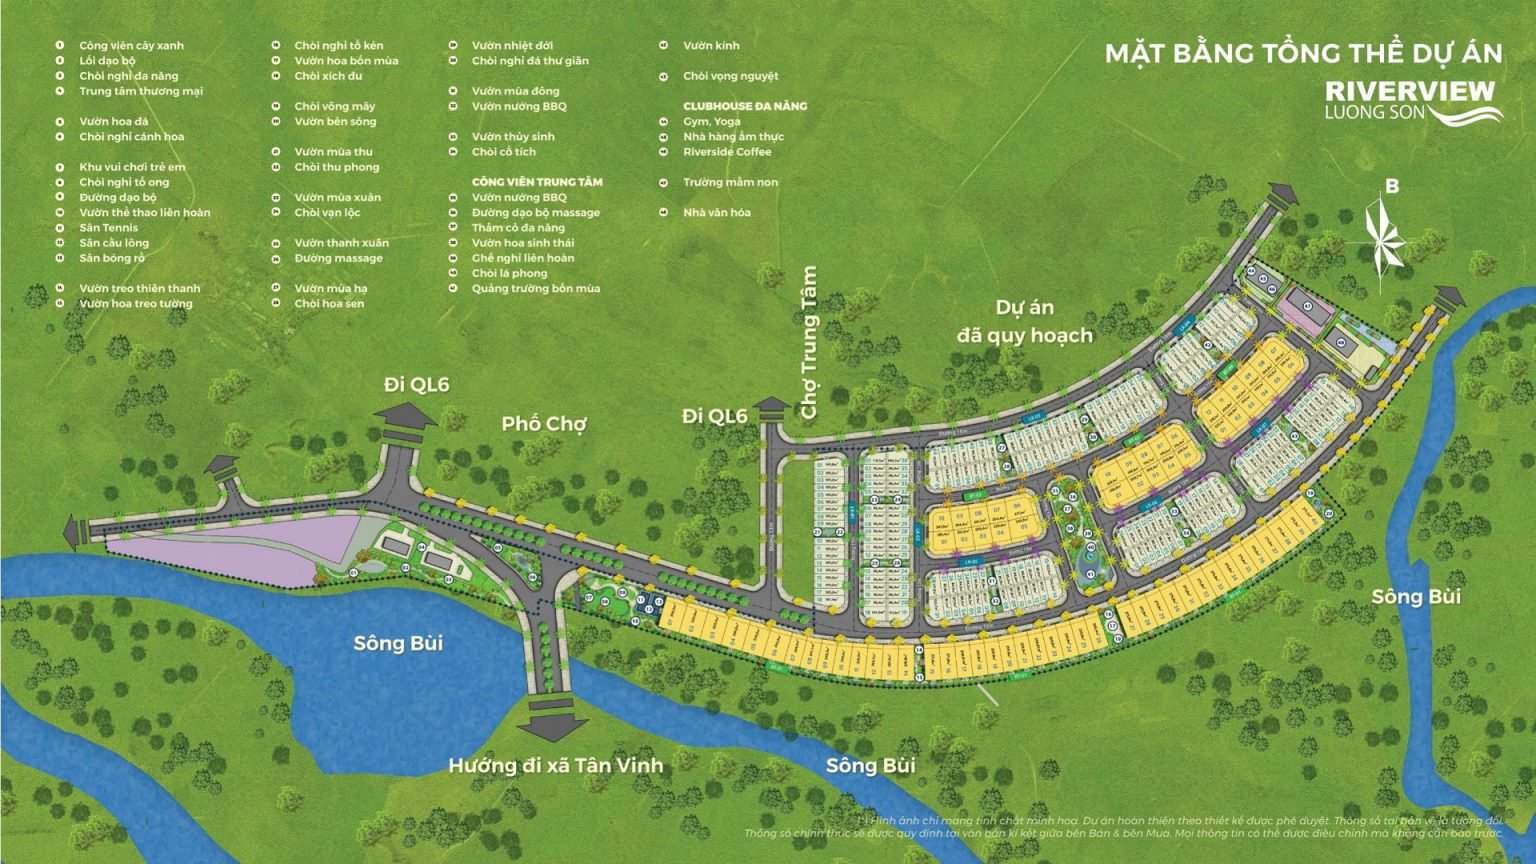 Cần bán Đất nền dự án đường Quốc lộ 6, Thị trấn Lương Sơn, Diện tích 270m², Giá 26 Triệu/m² - LH: 0975607865 4